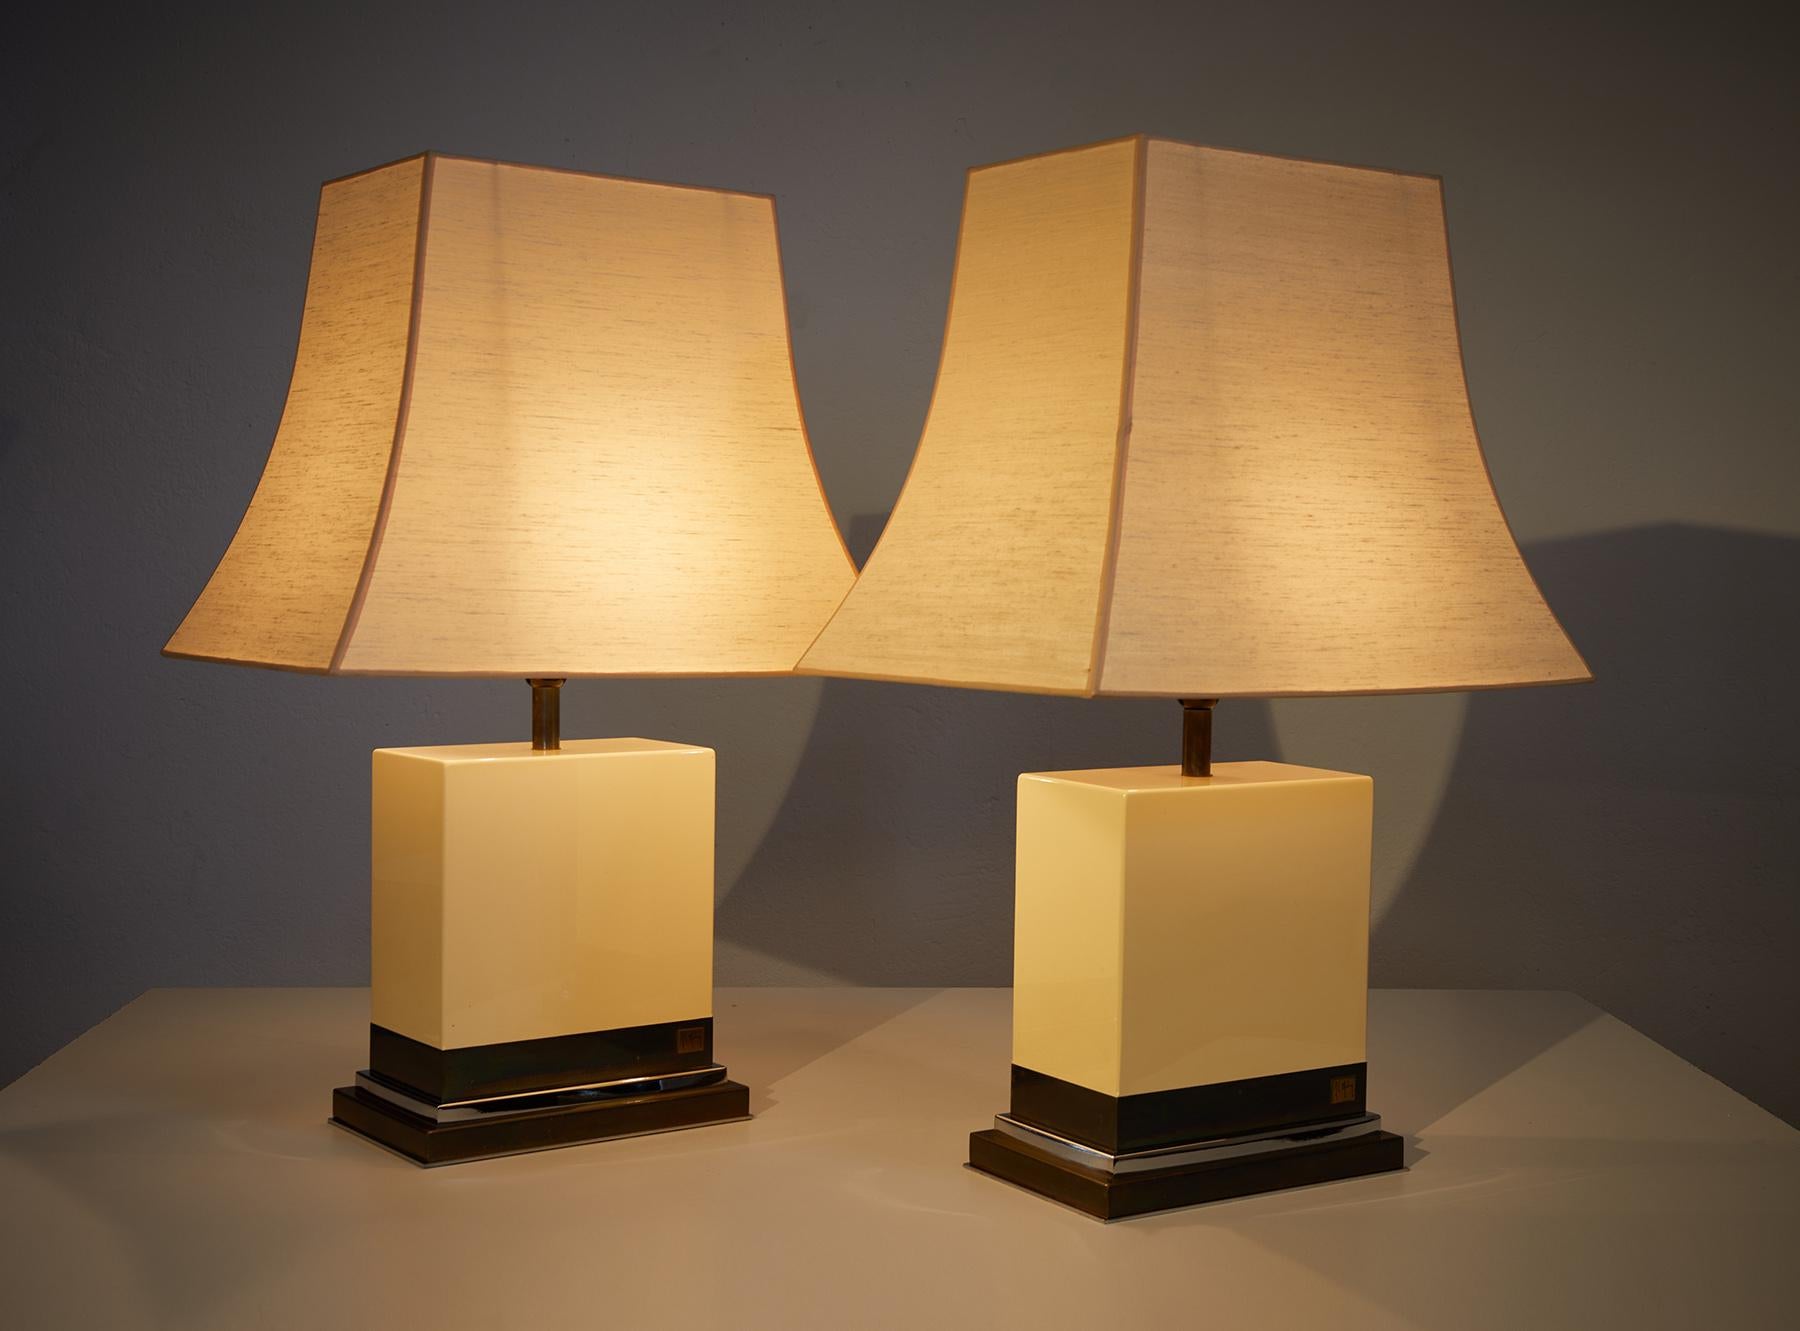 Paire de lampes de table laquées ivoire par Jean-Claude Mahey, France 1970-80.

La partie supérieure des lampes est composée de bois laqué ivoire en très bon état et la base est composée de laiton et de chrome. 

Les deux lampes sont signées par